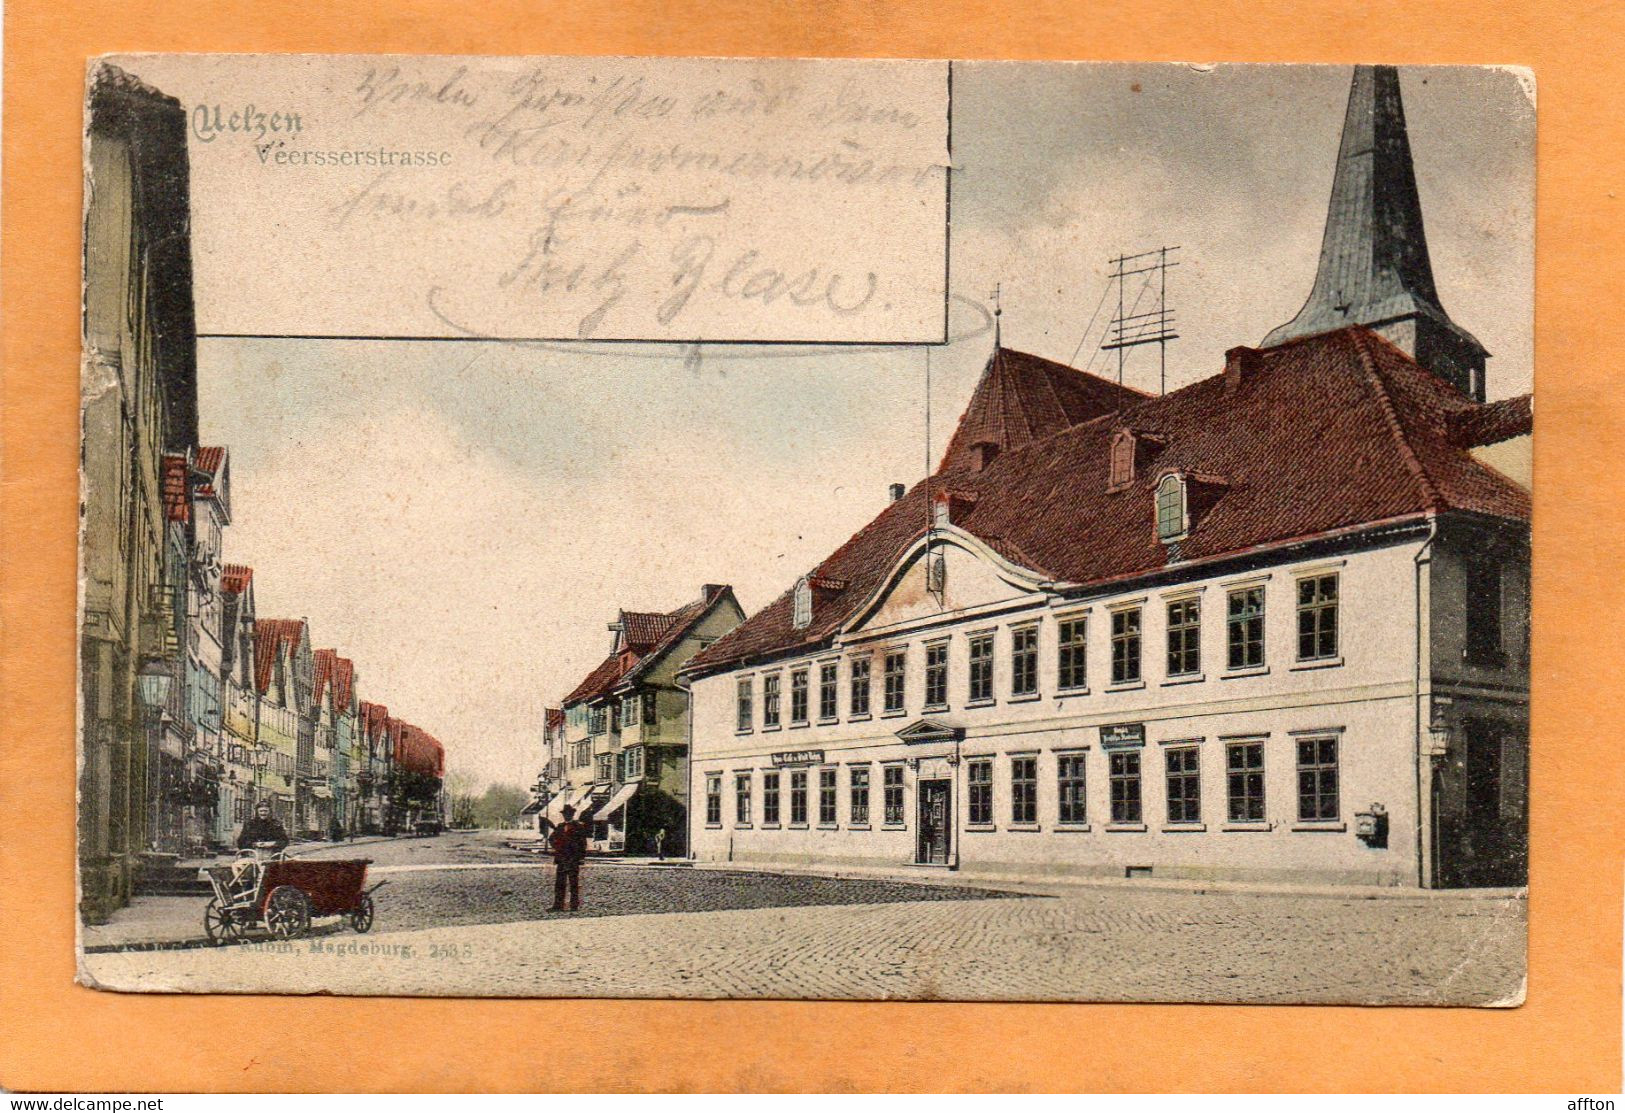 Uelzen Germany 1900  Postcard - Uelzen